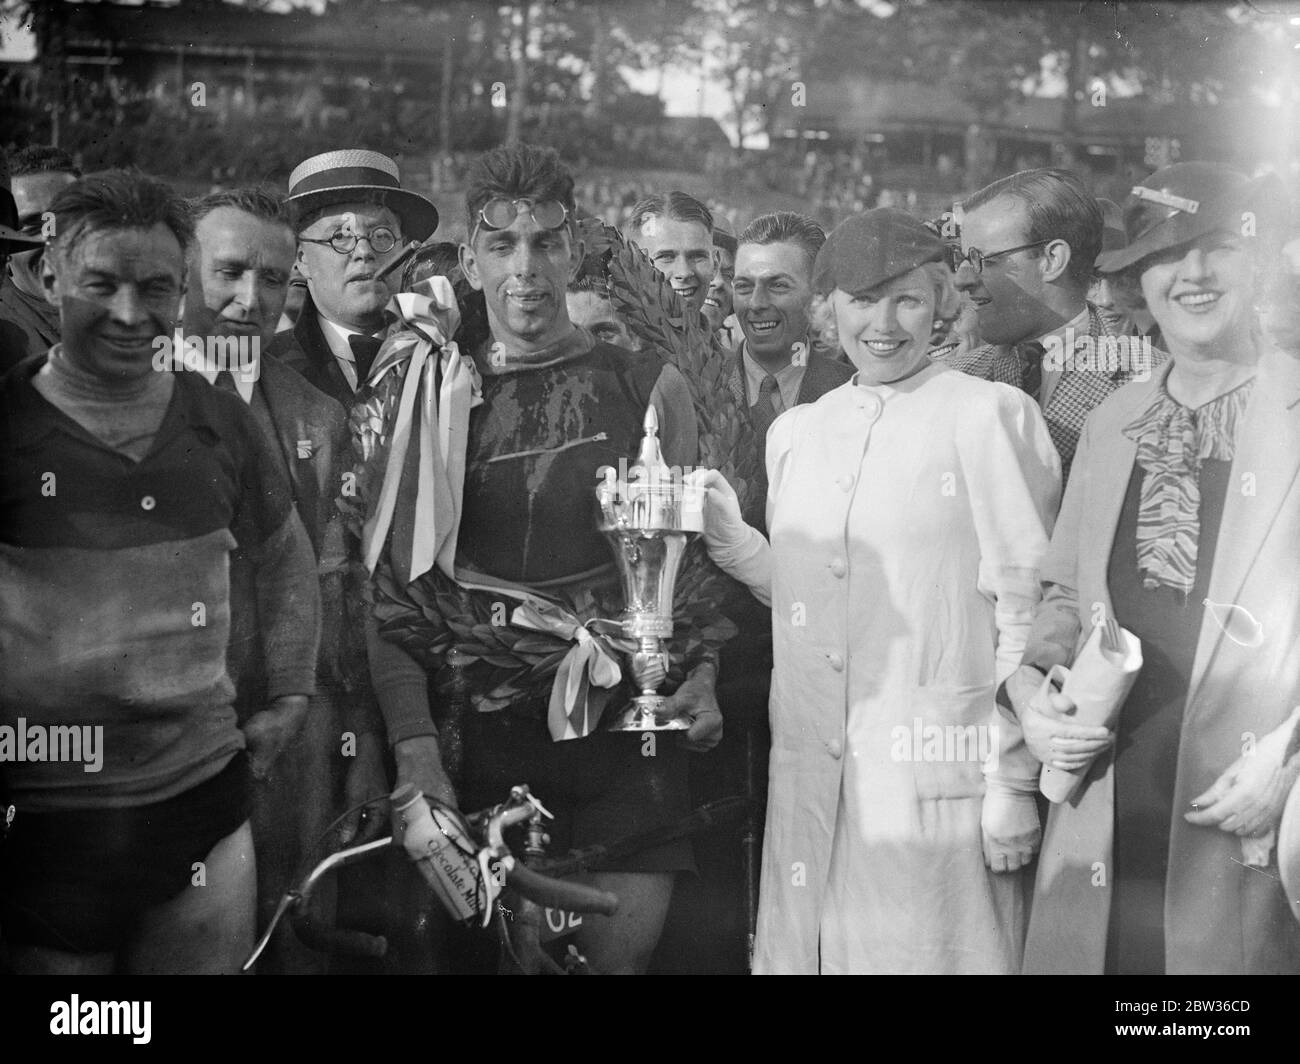 Vincitore della prova ciclistica di 100 chilometri a Brooklands . J J Salt of Liverpool ha vinto i 100 km di prove ciclistiche che si sono svolte presso la pista di Brooklands, Weybridge, Surrey. J J Salt viene presentato con il trofeo dopo aver vinto la gara. 18 giugno 1933 Foto Stock